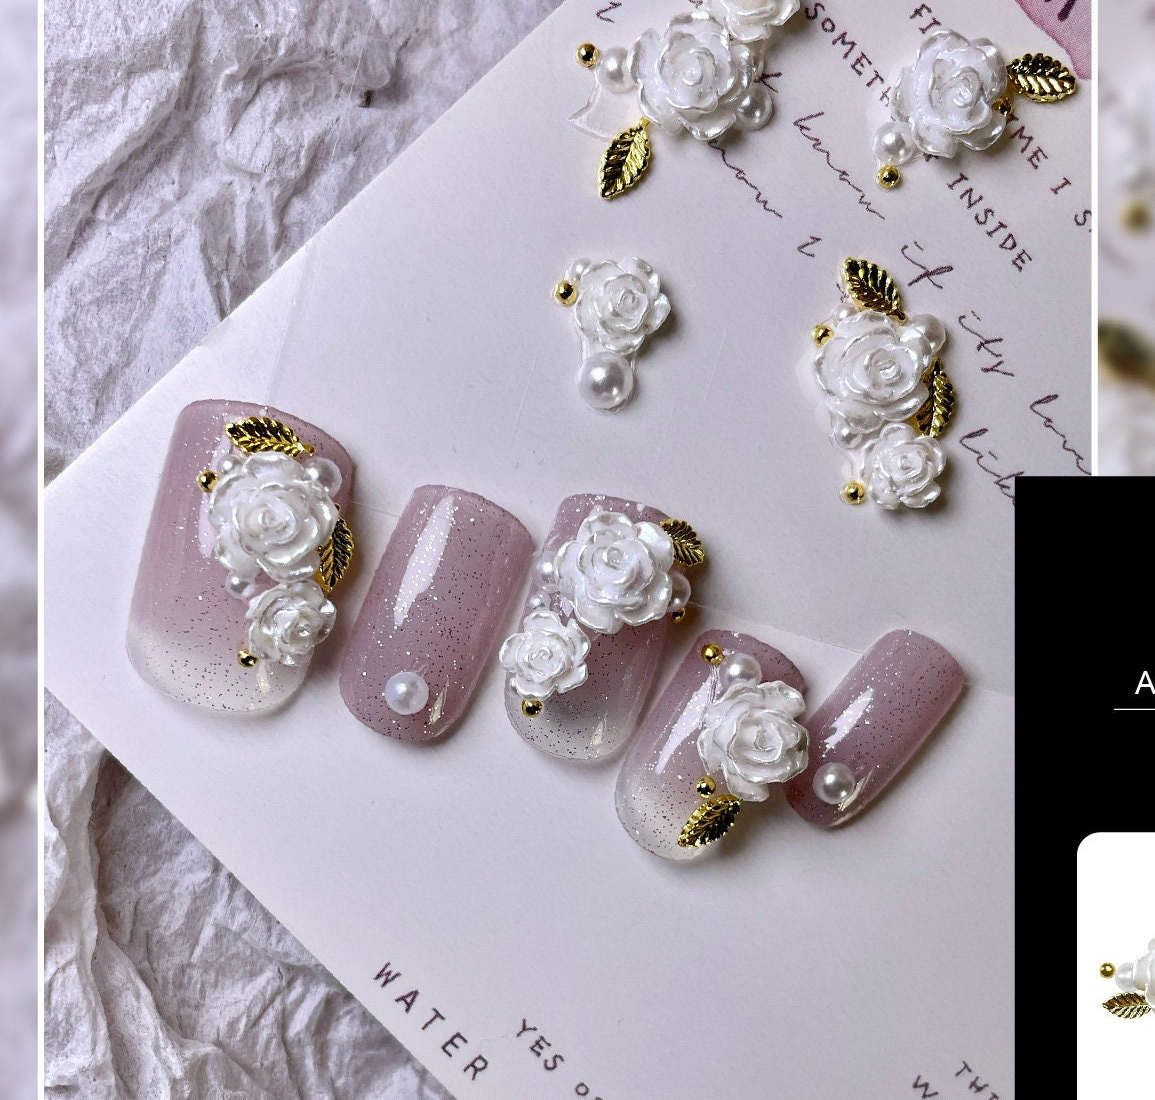 170 Nail Charms / Nail Design ideas  nail charms jewelry, nail charms,  nail art